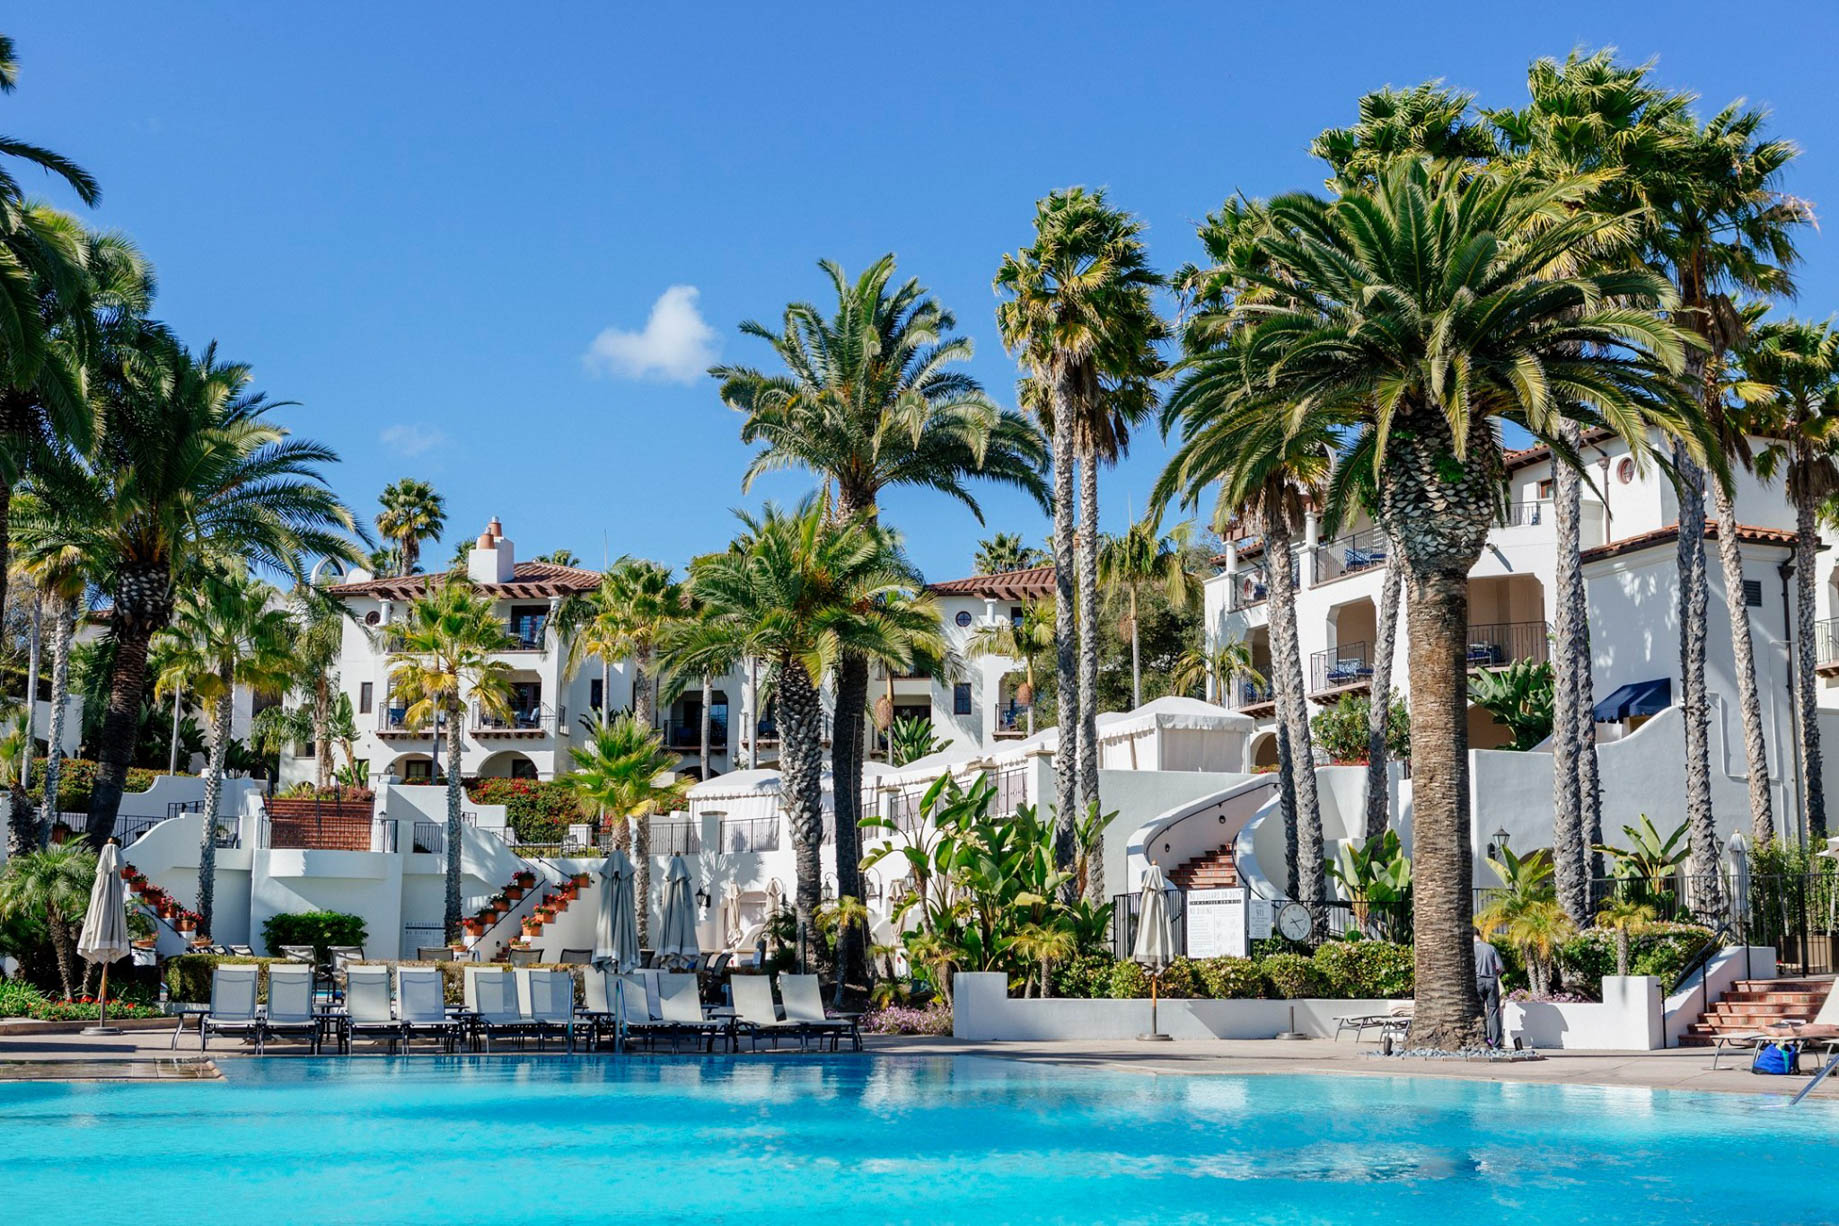 The Ritz-Carlton Bacara, Santa Barbara Resort – Santa Barbara, CA, USA – Resort Pool Deck